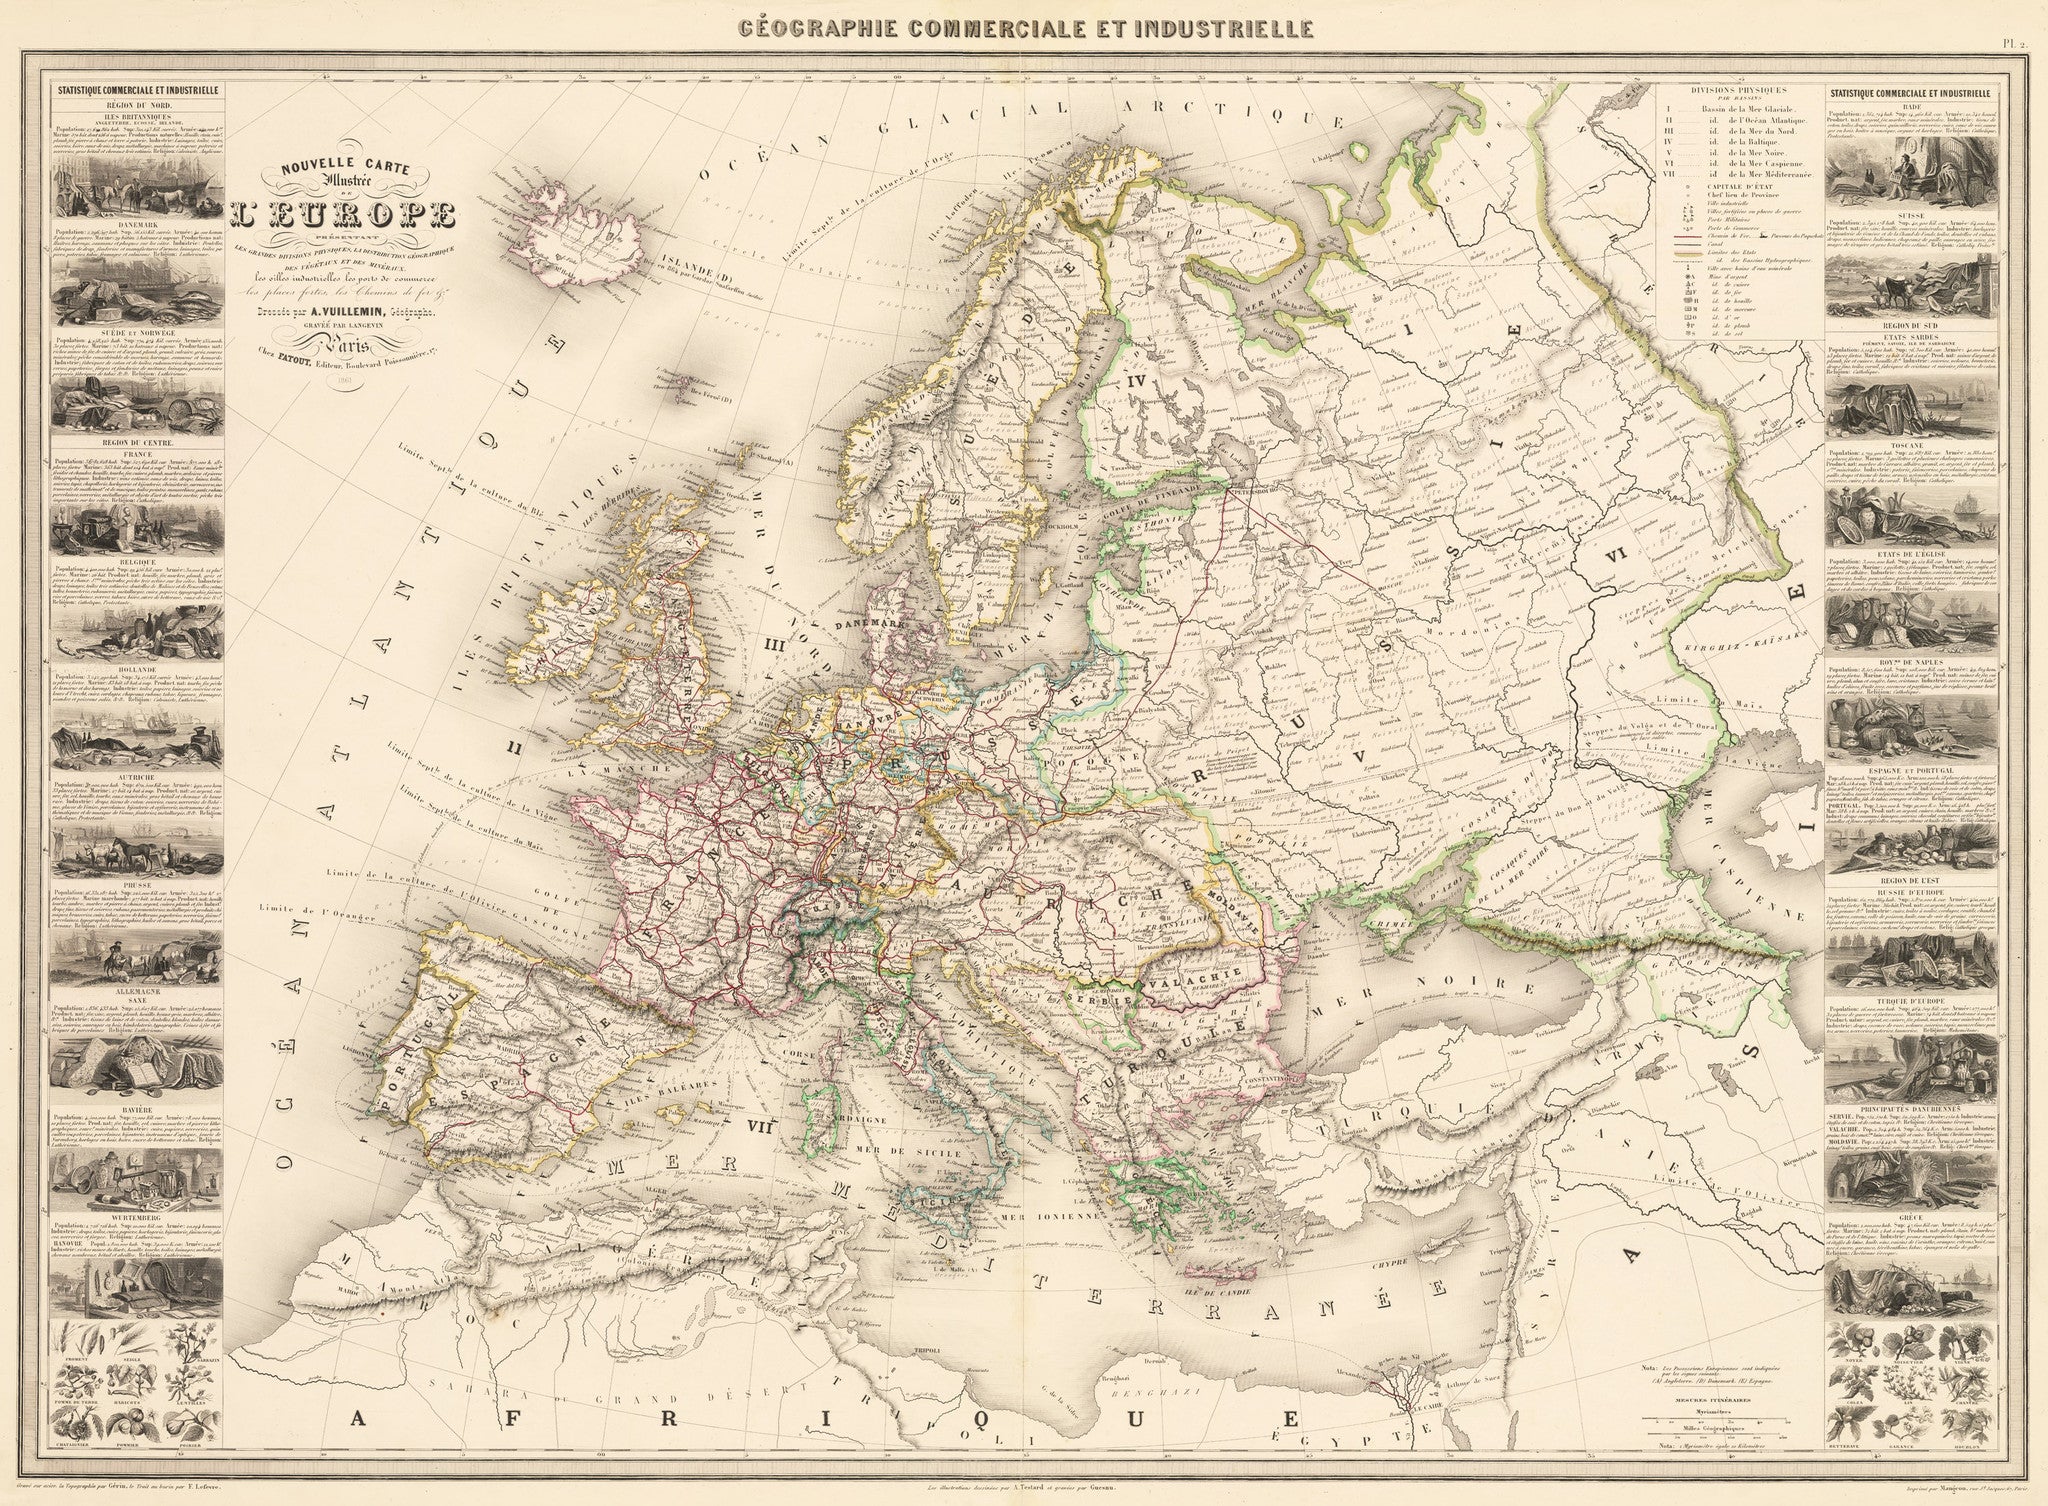 1861 Nouvelle Carte Illustre De L Europe Thevintagemapshop Com The Vintage Map Shop Inc